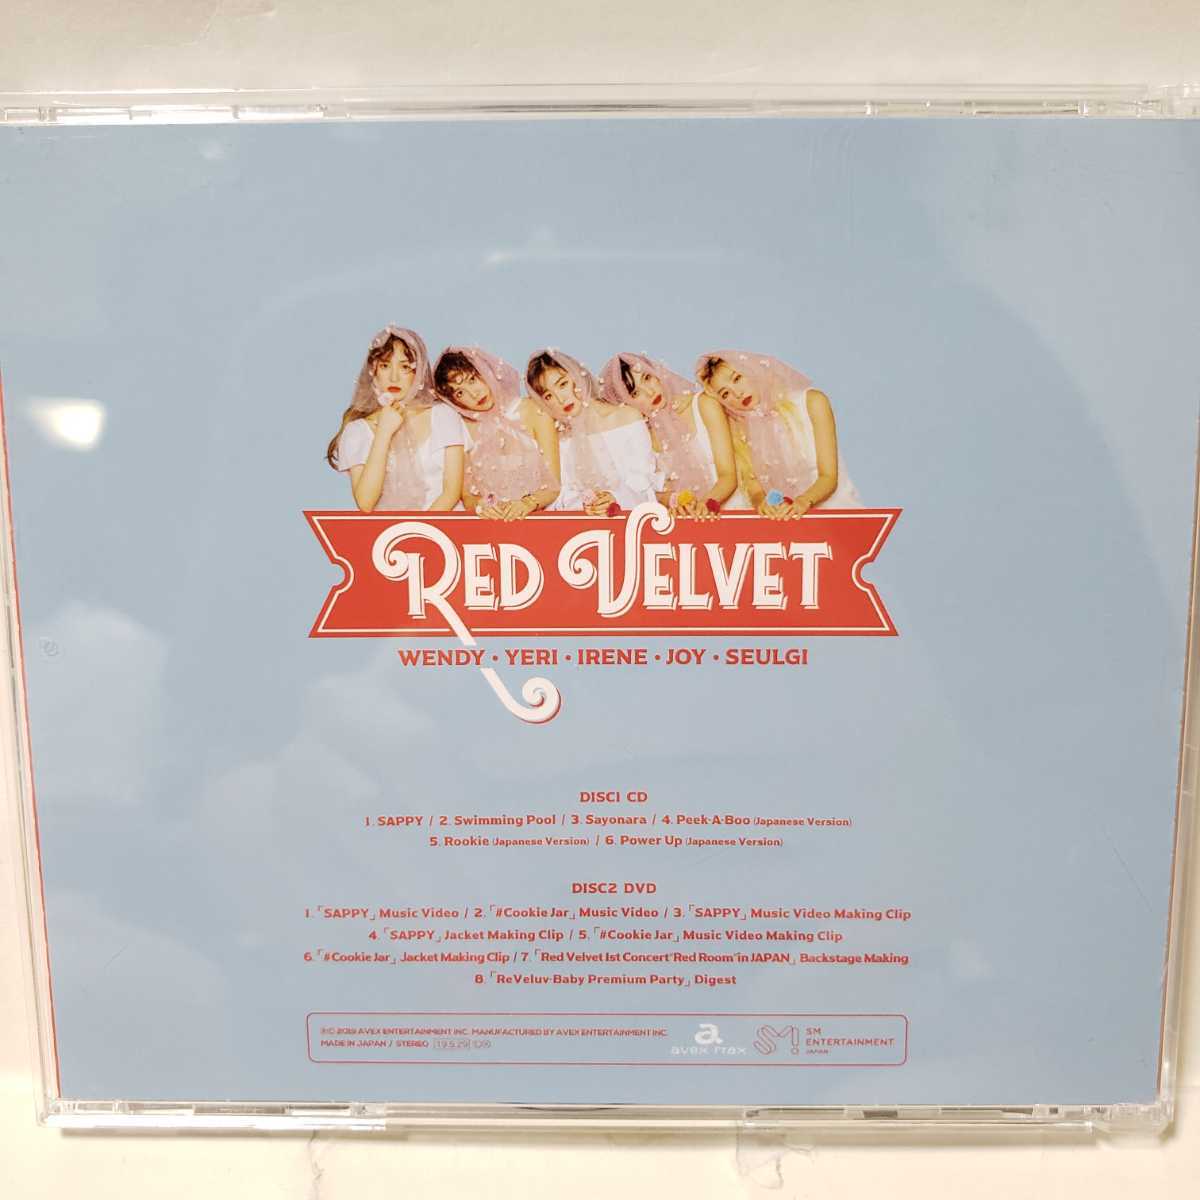 レドベル redvelvet sappy cd アルバム 初回生産限定盤 公式